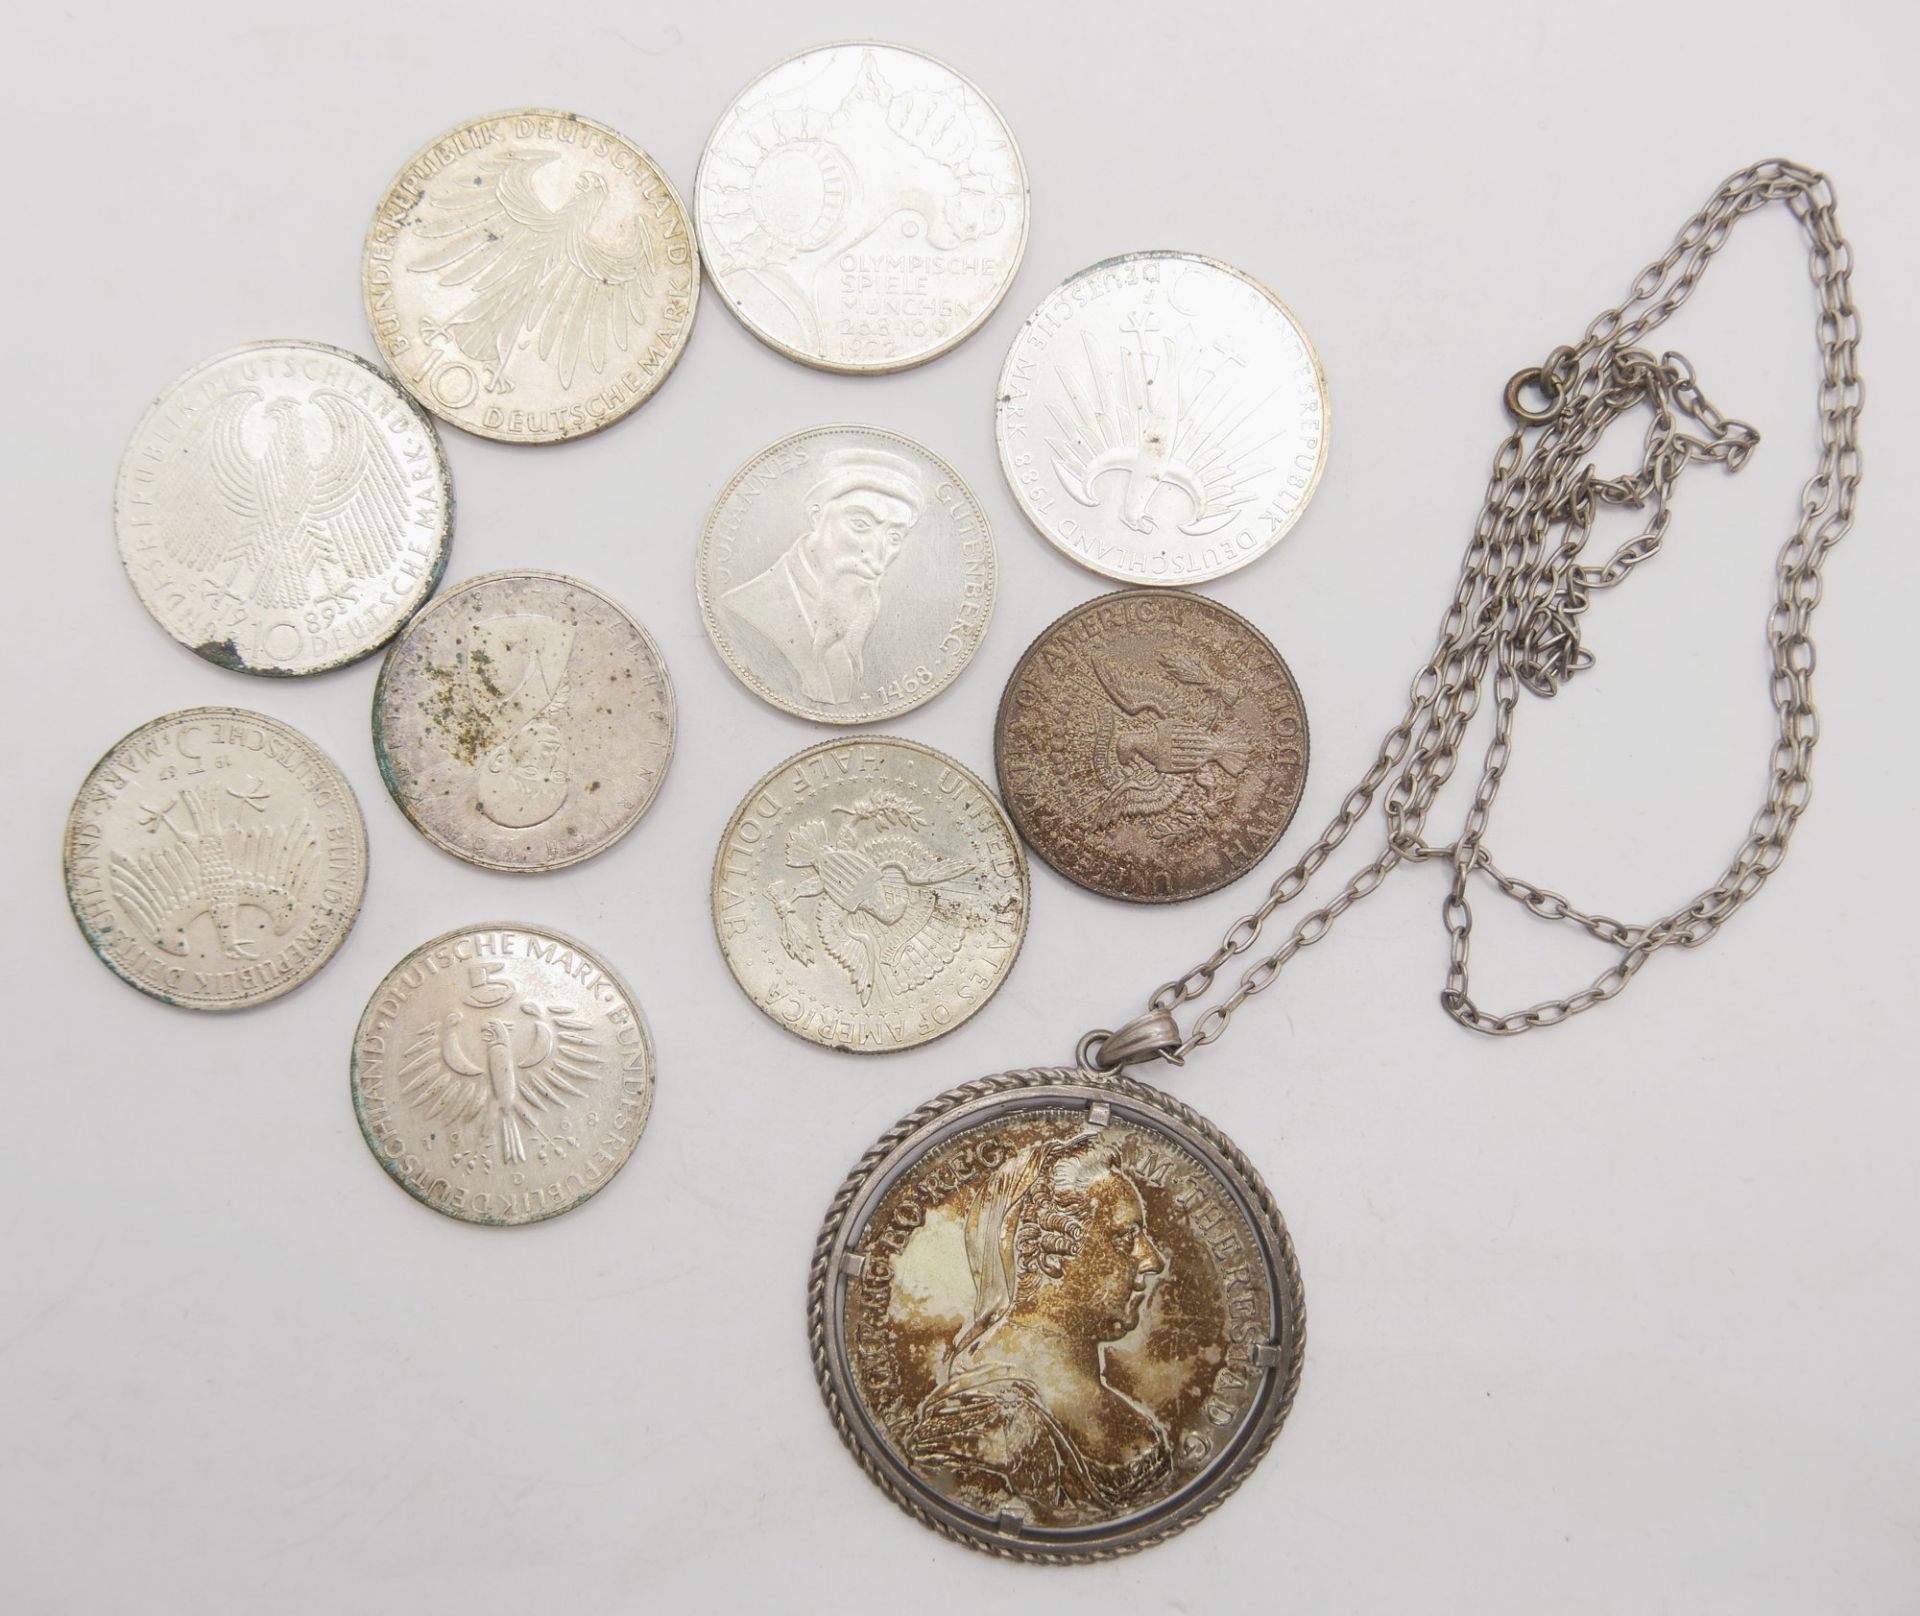 Lot Silbermünzen & Medaillen, dabei 4x 10 Mark, sowie 4x5 Mark BRD, 2x Kennedy Dollar 1964 und 1